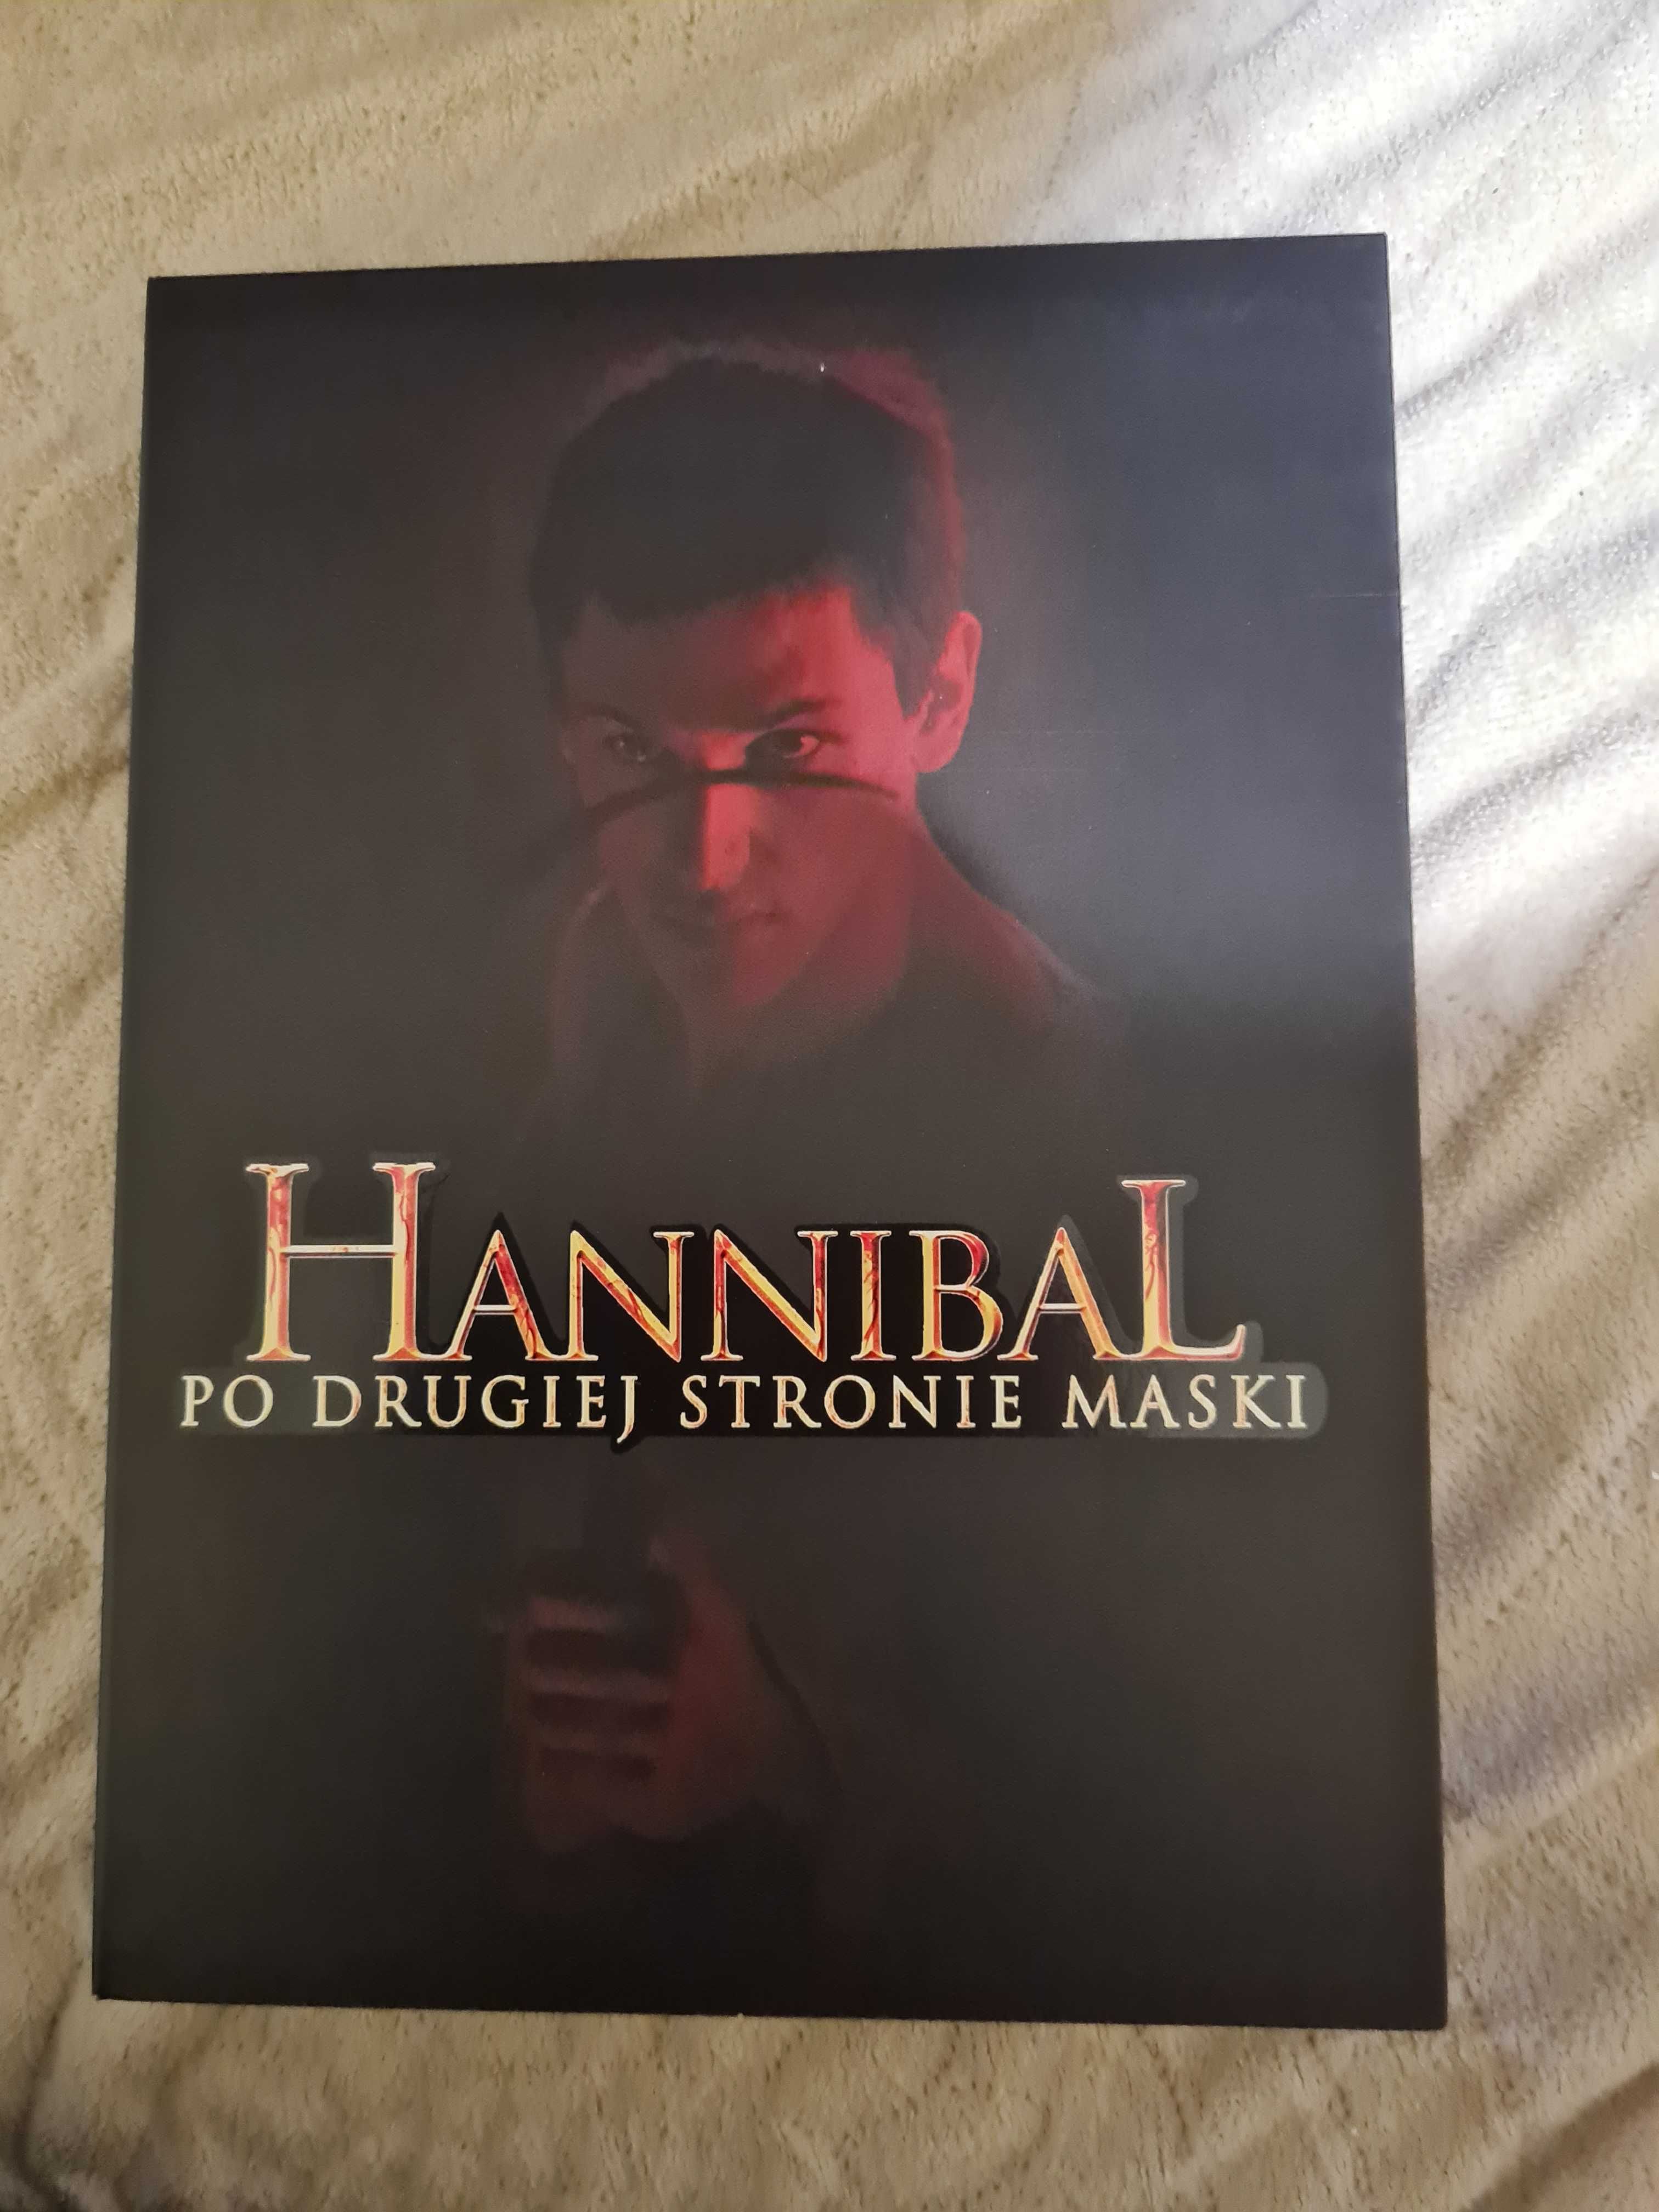 Hannibal po drugiej stronie maski płyta DVD